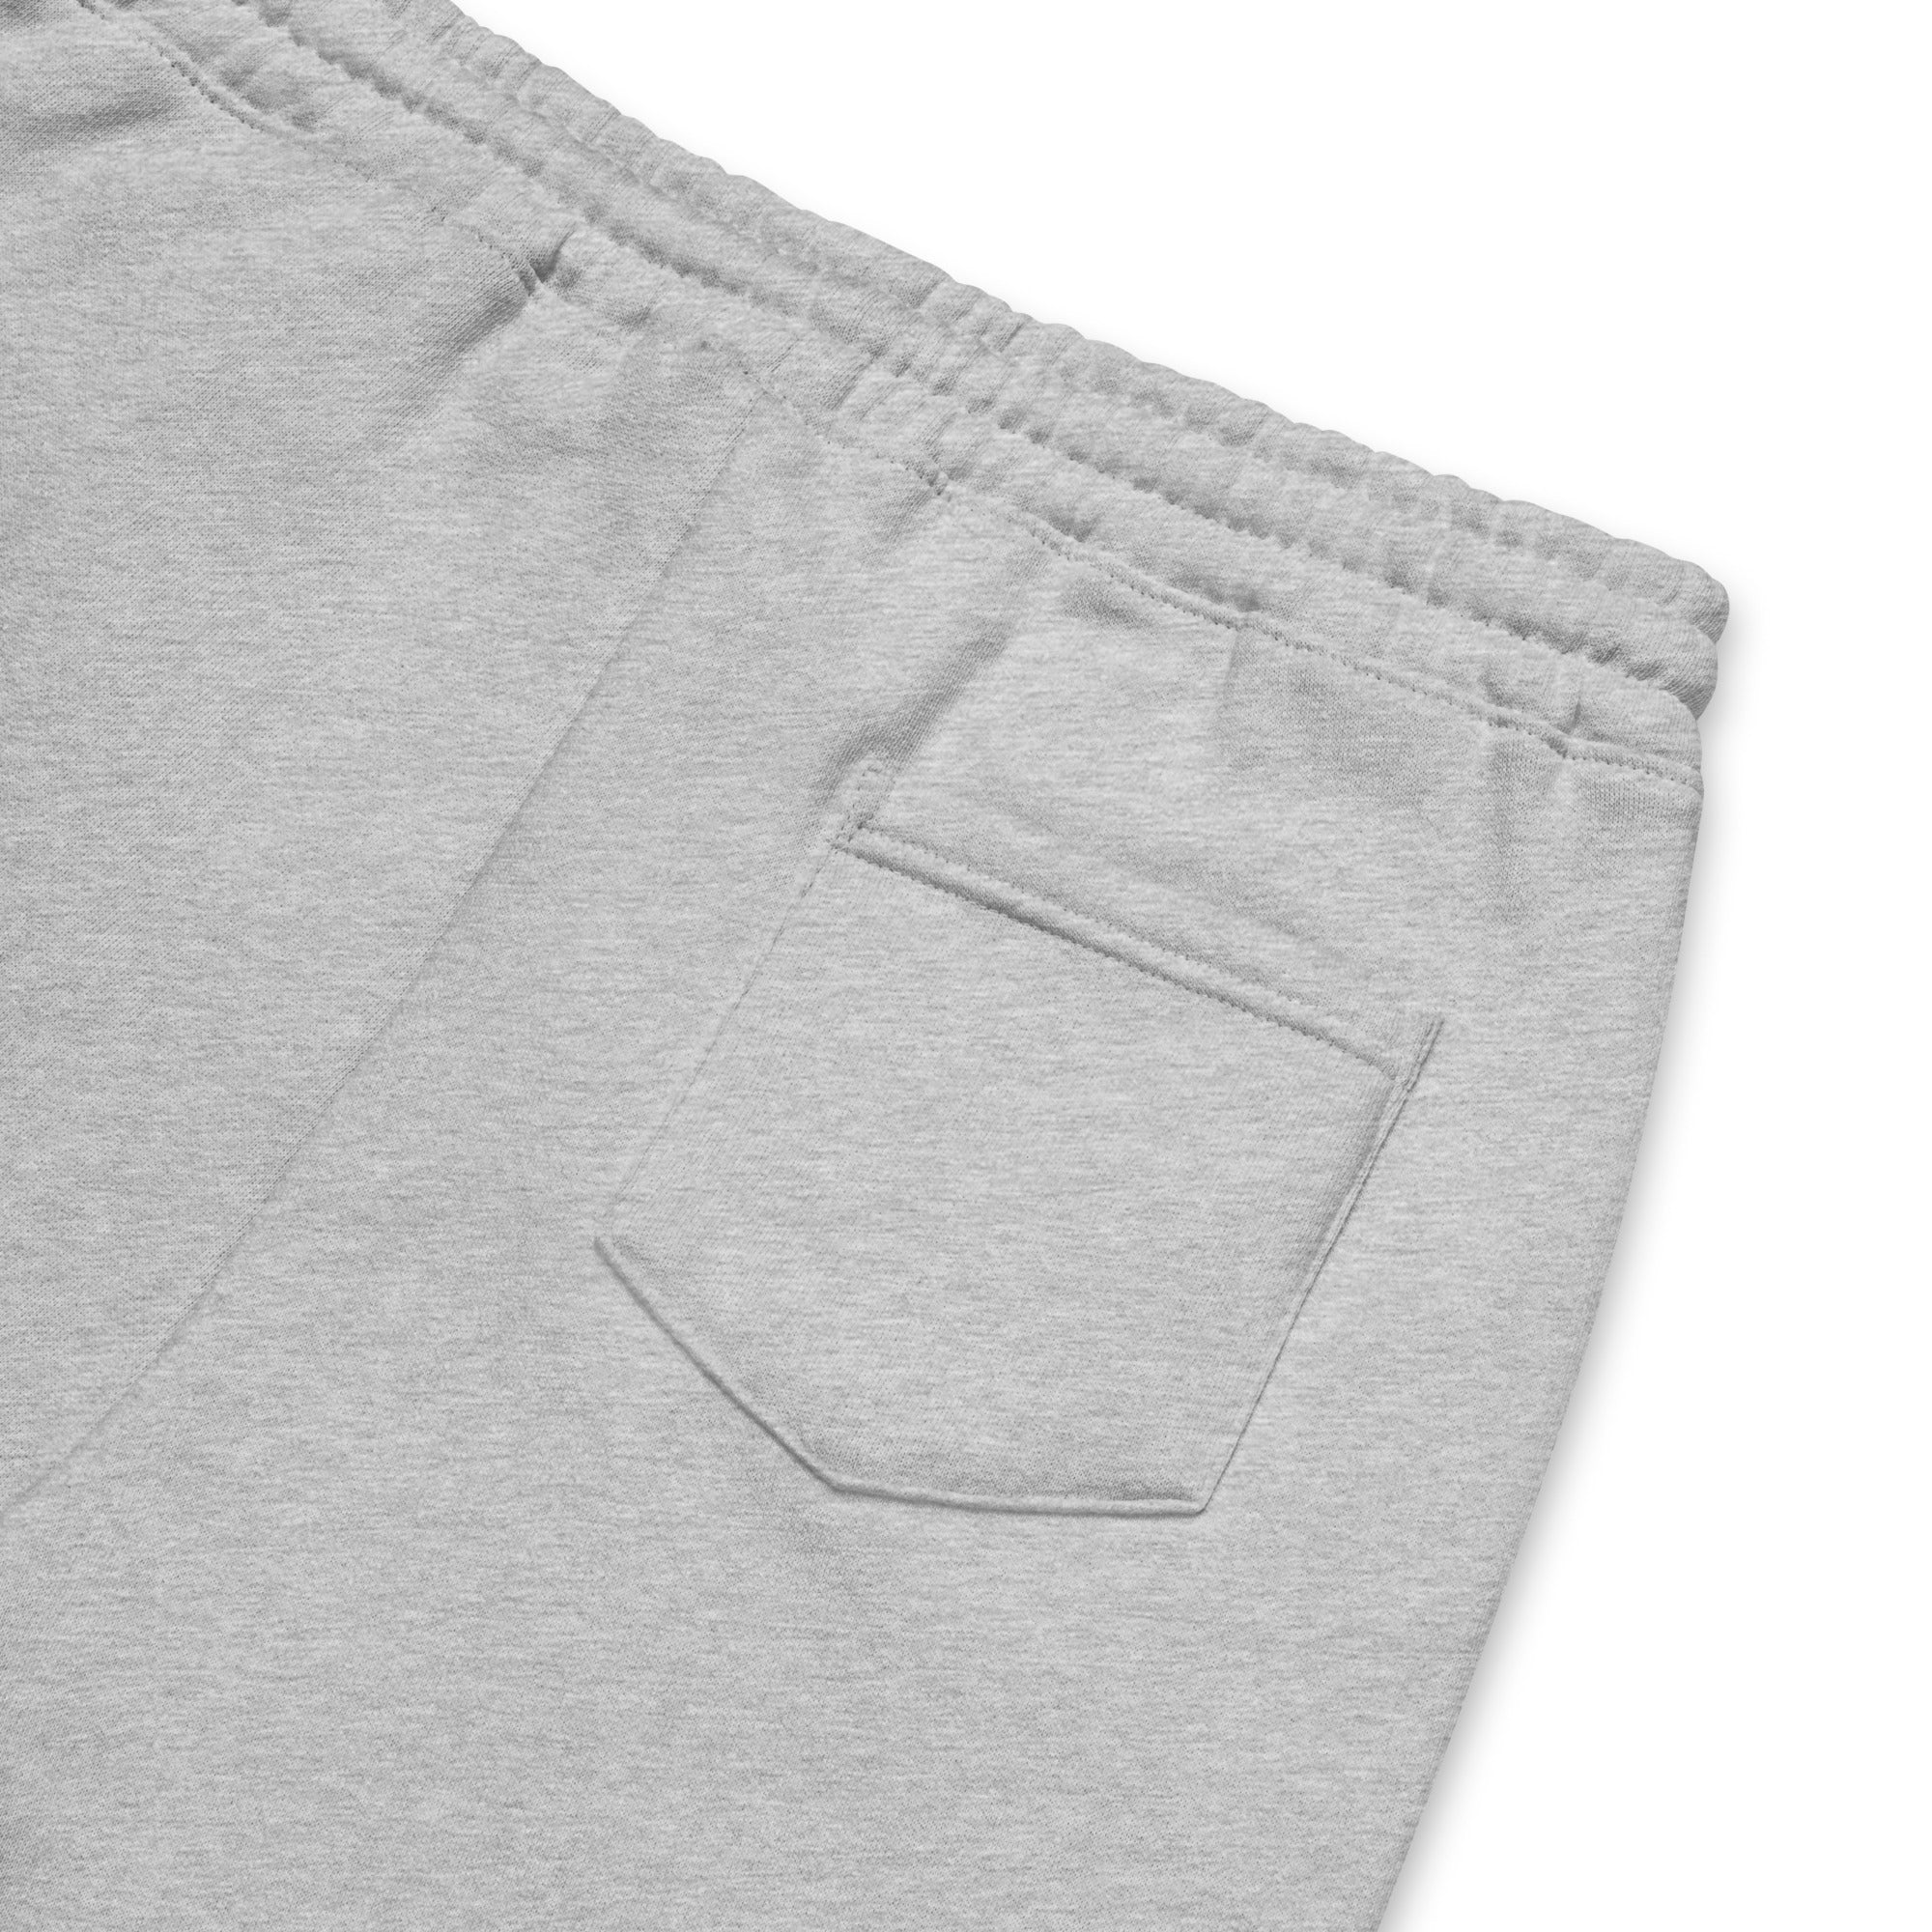 TTBTTM Fleece Shorts (Color)